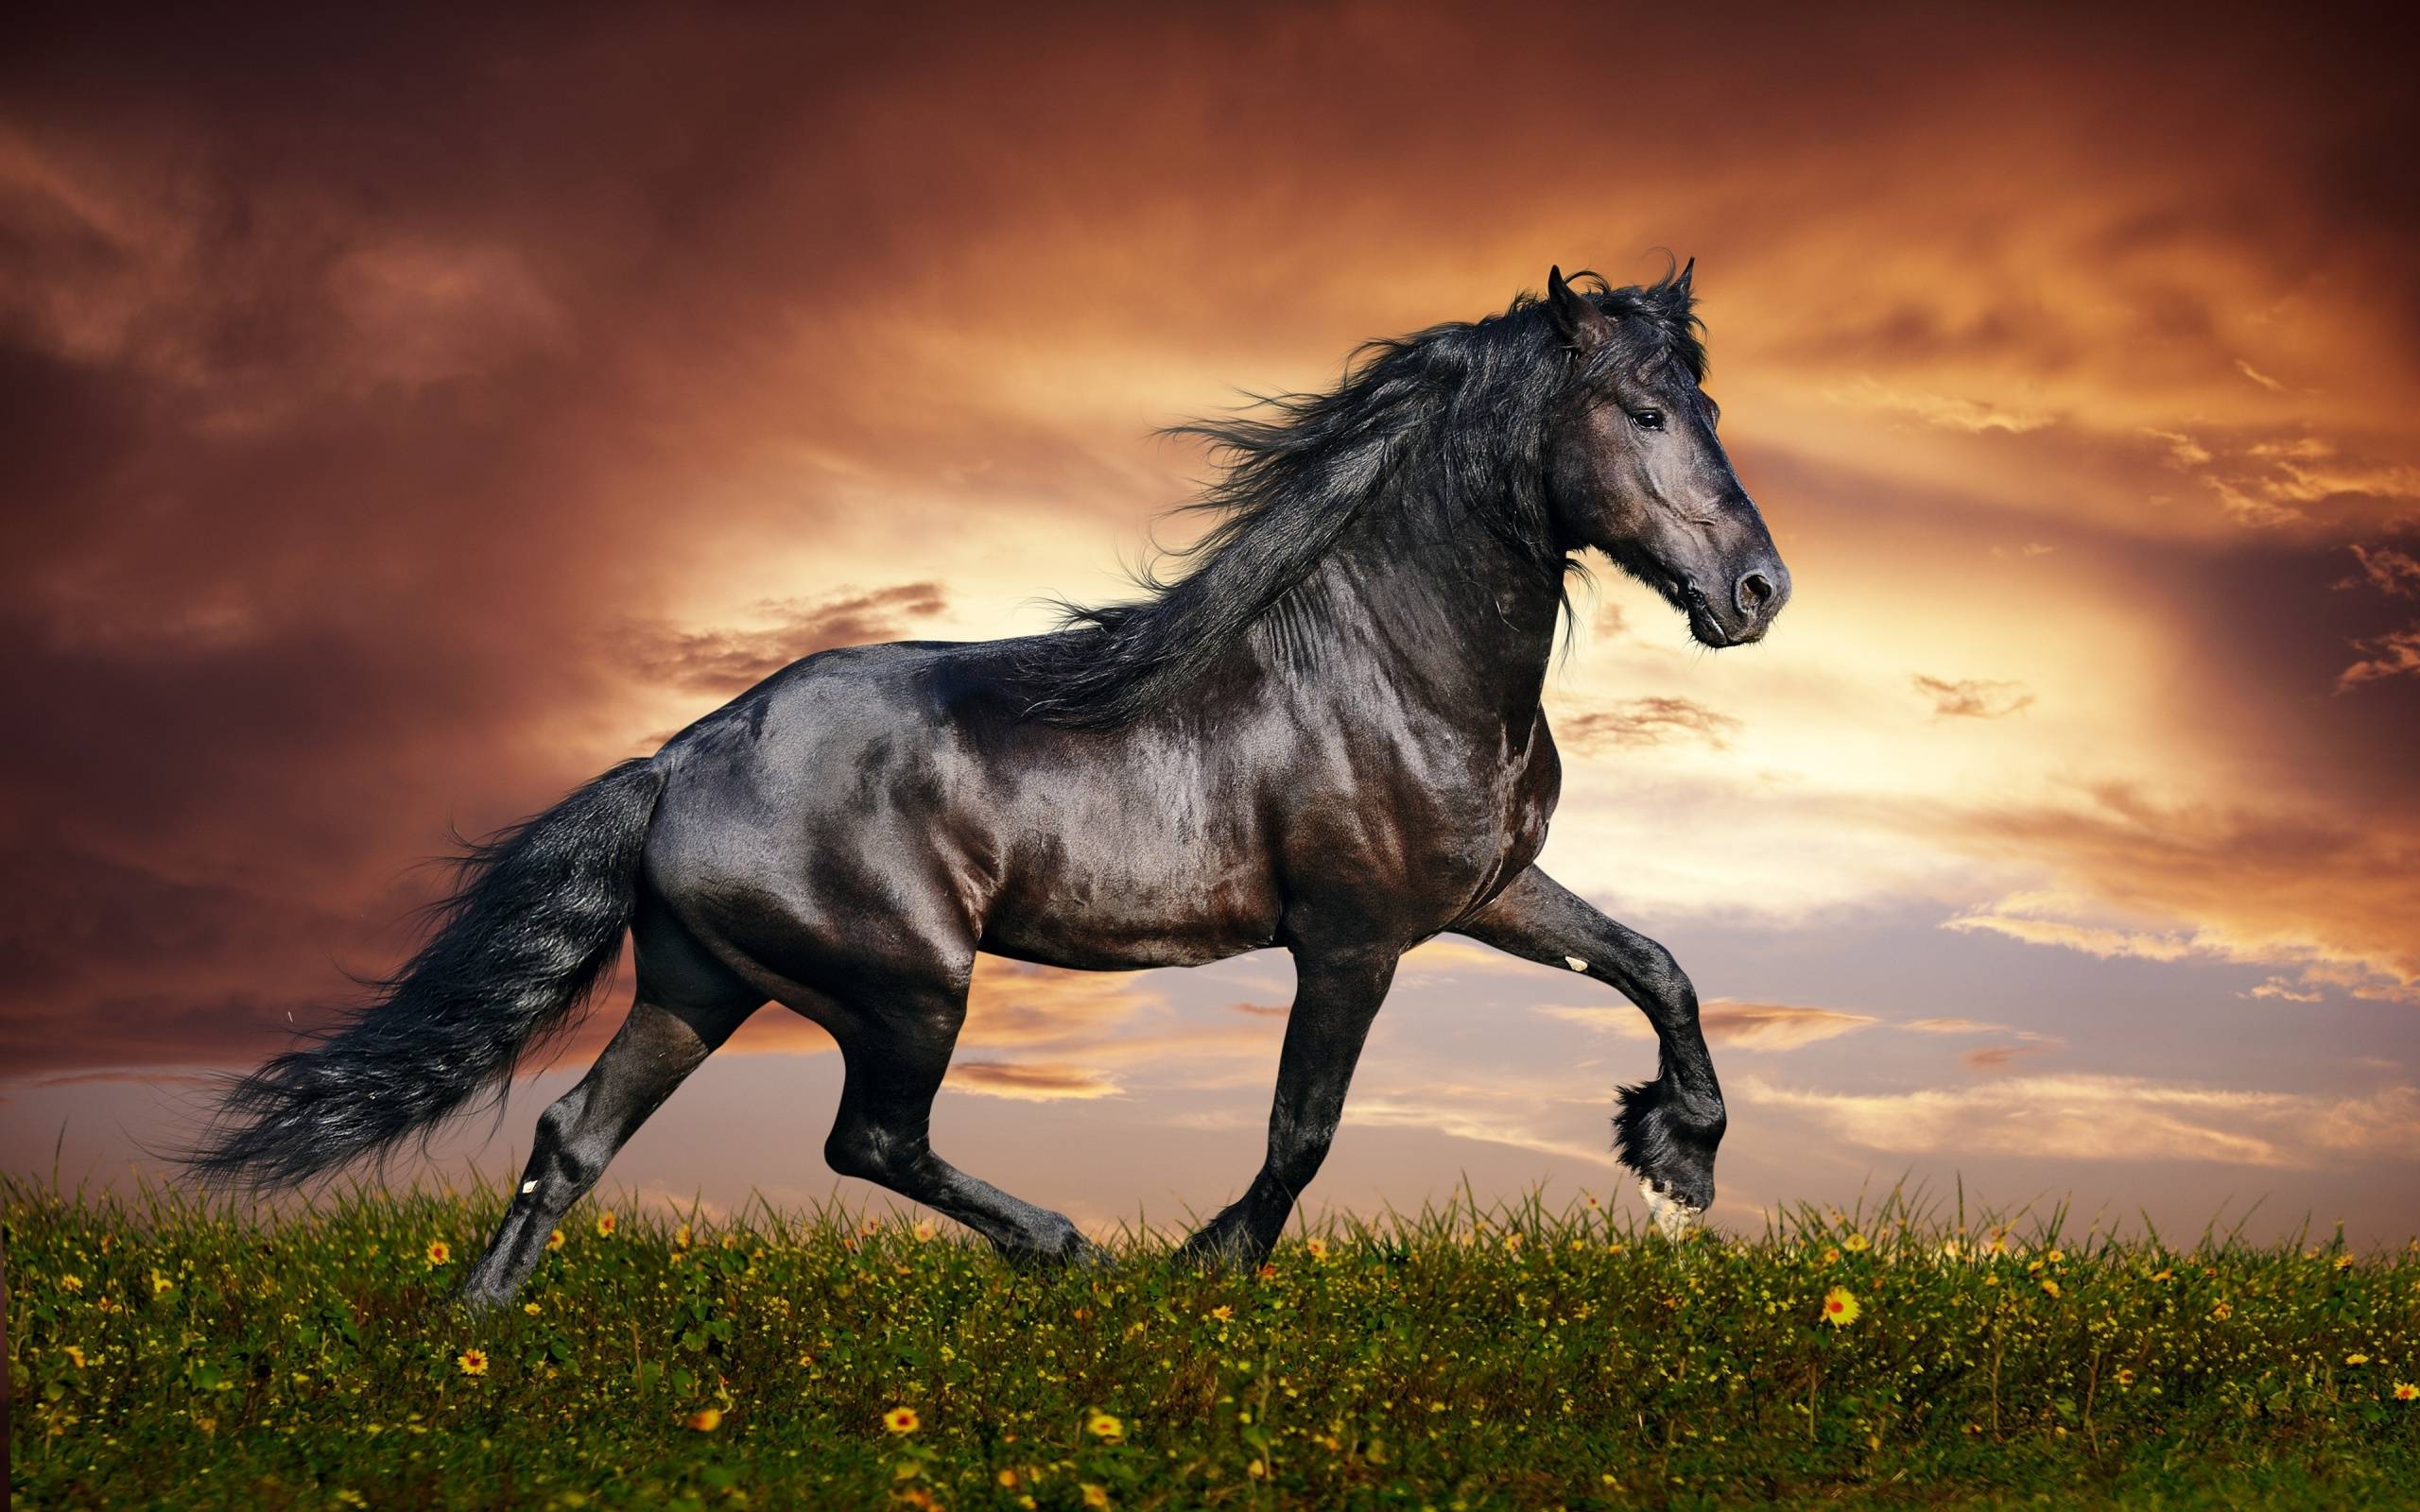 Cool Horse Desktop Wallpapers - Top